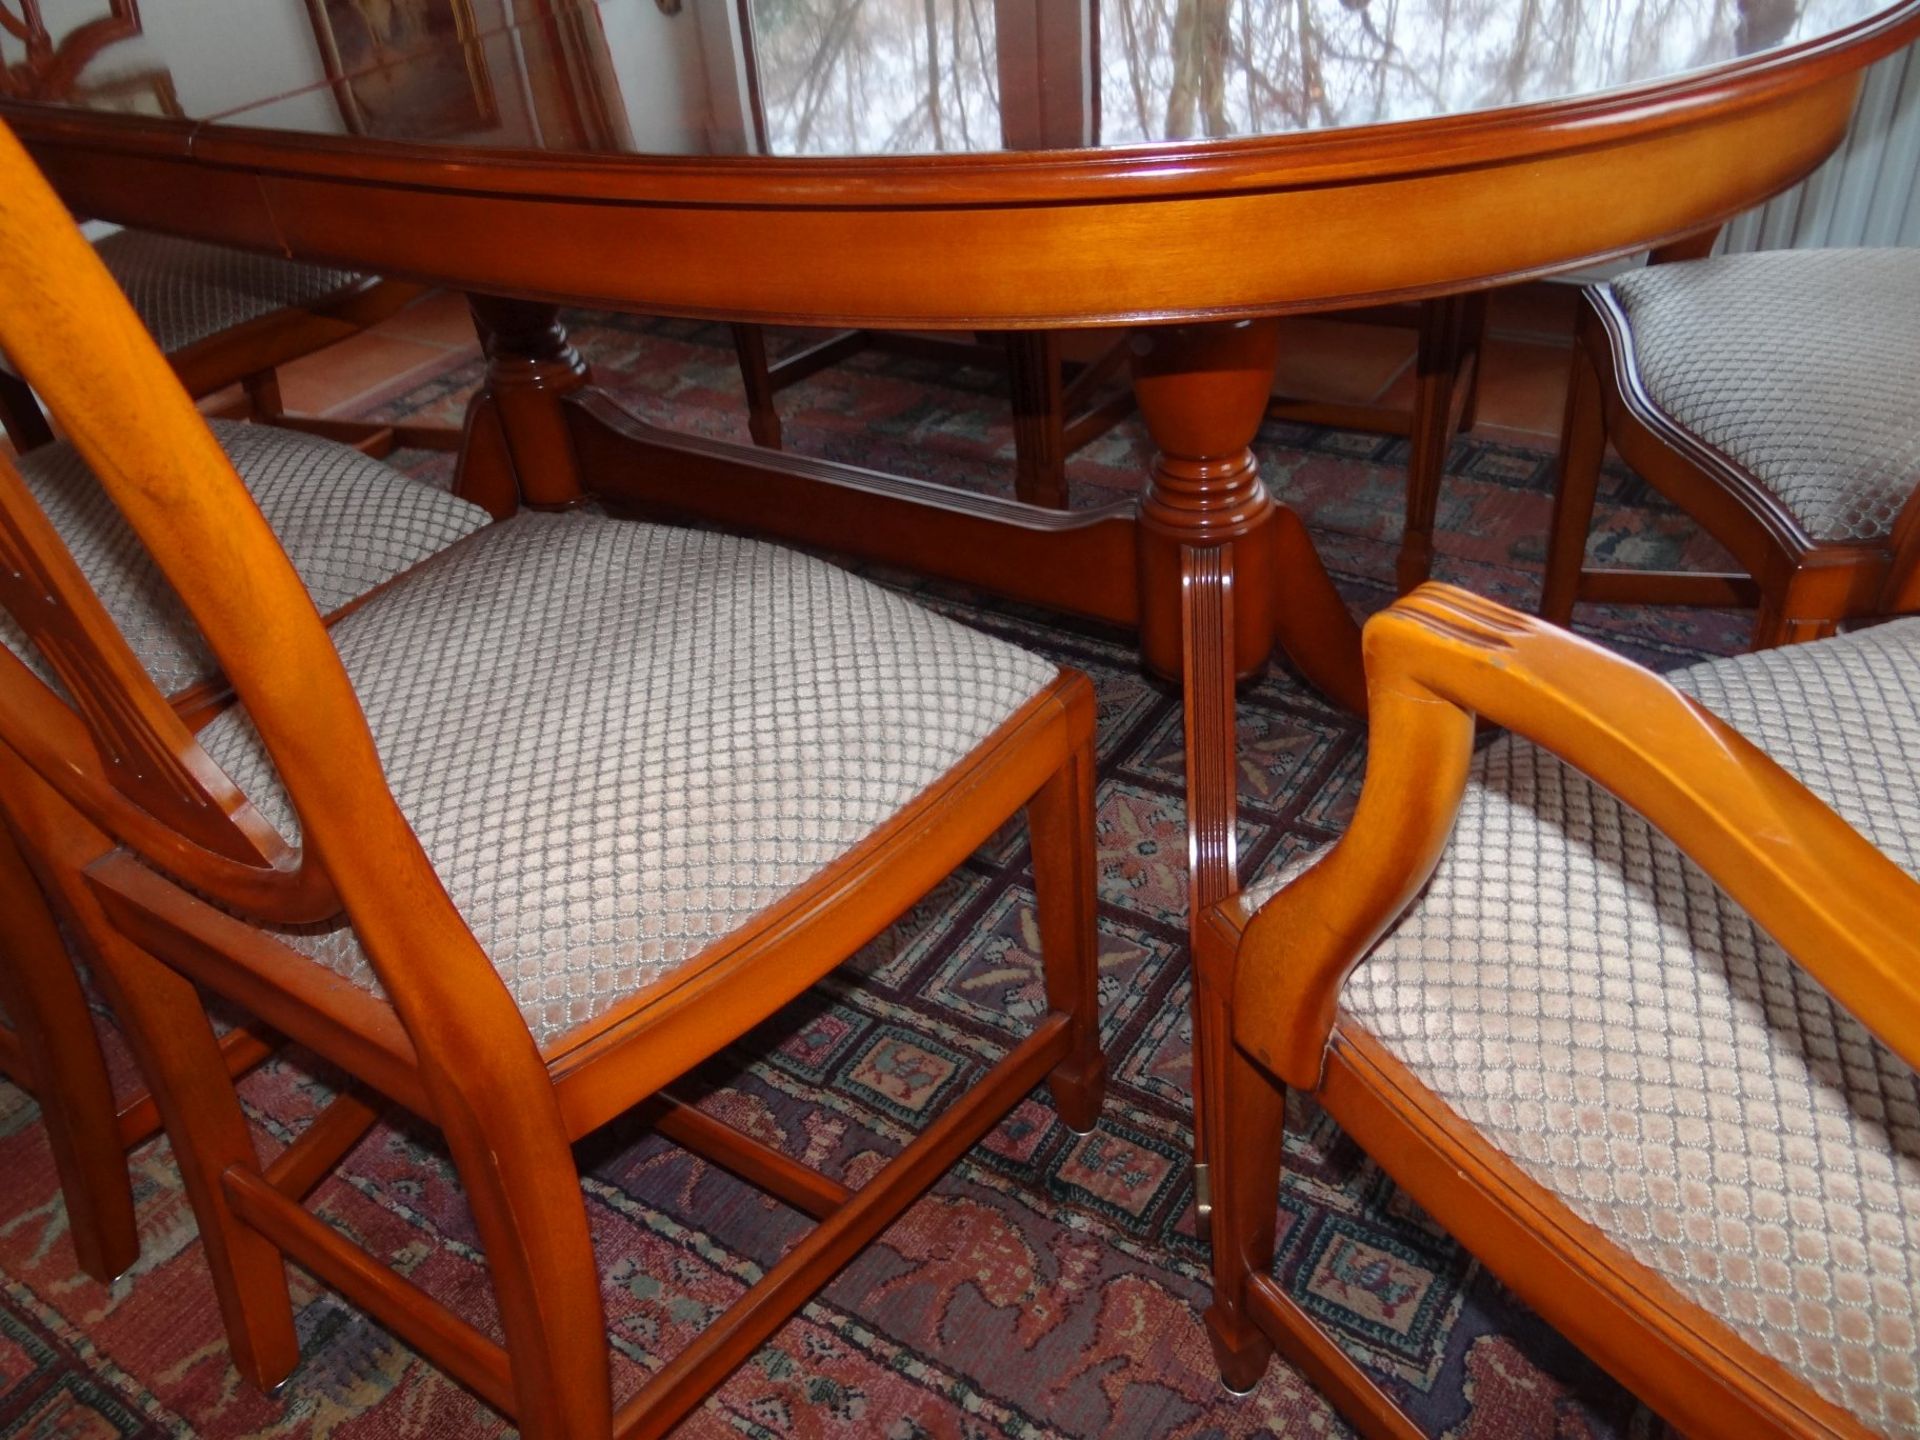 Esstisch mit 7 Stühlen im Sheraton-Stil, Kirsche, 3 Armlehnstühle, 4 Stühle, Tisch ausziehbar, - Bild 3 aus 8